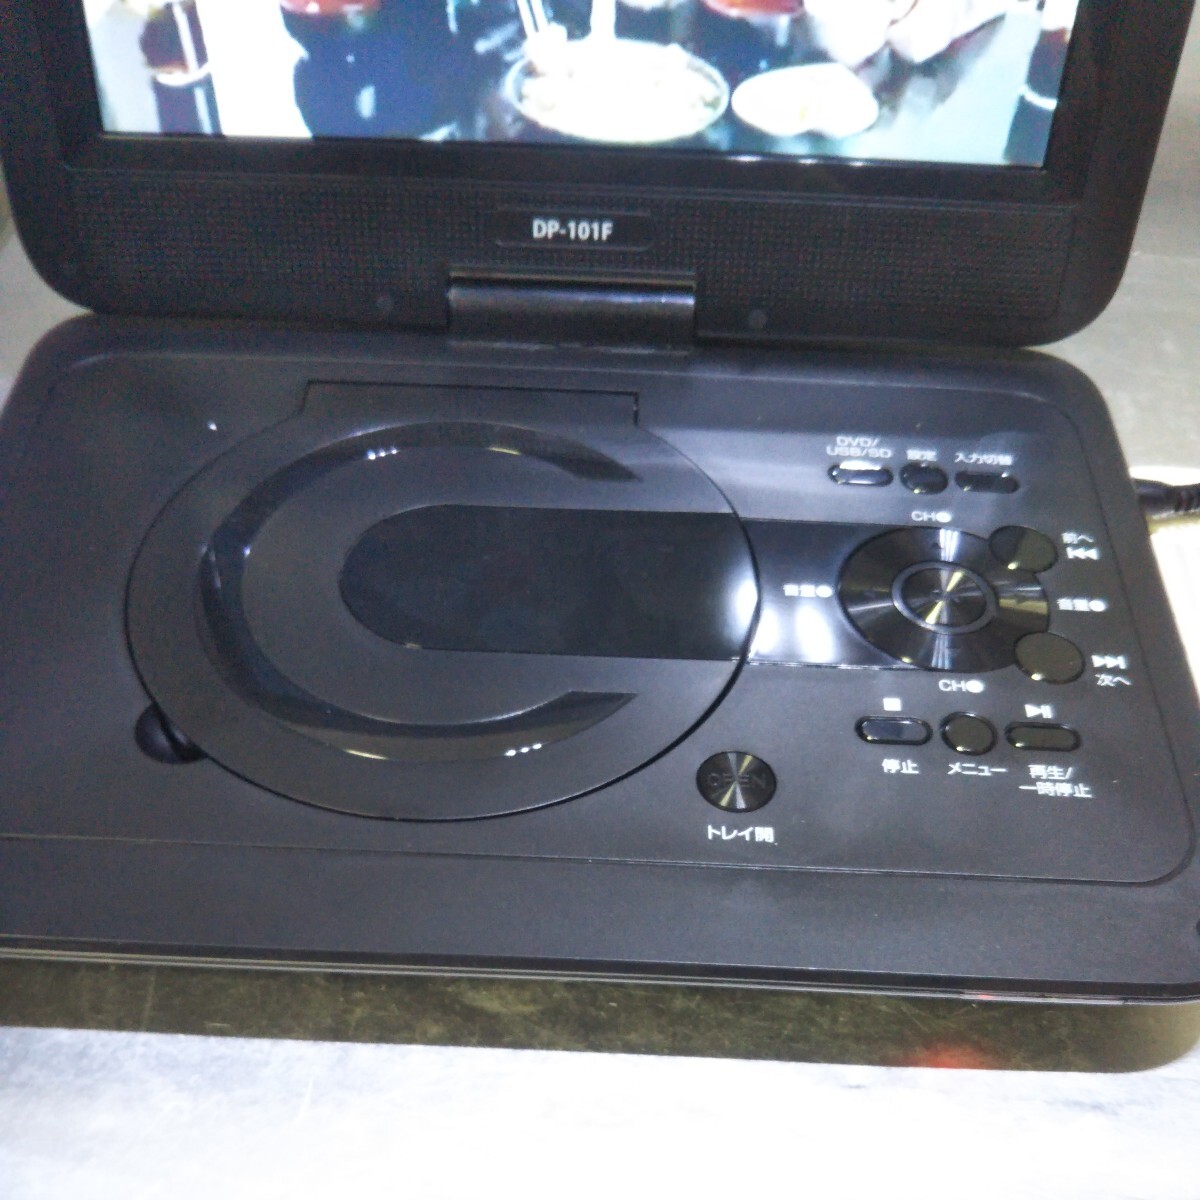  бесплатная доставка (4M990)Bearmax цифровое радиовещание портативный DVD плеер DP-101F